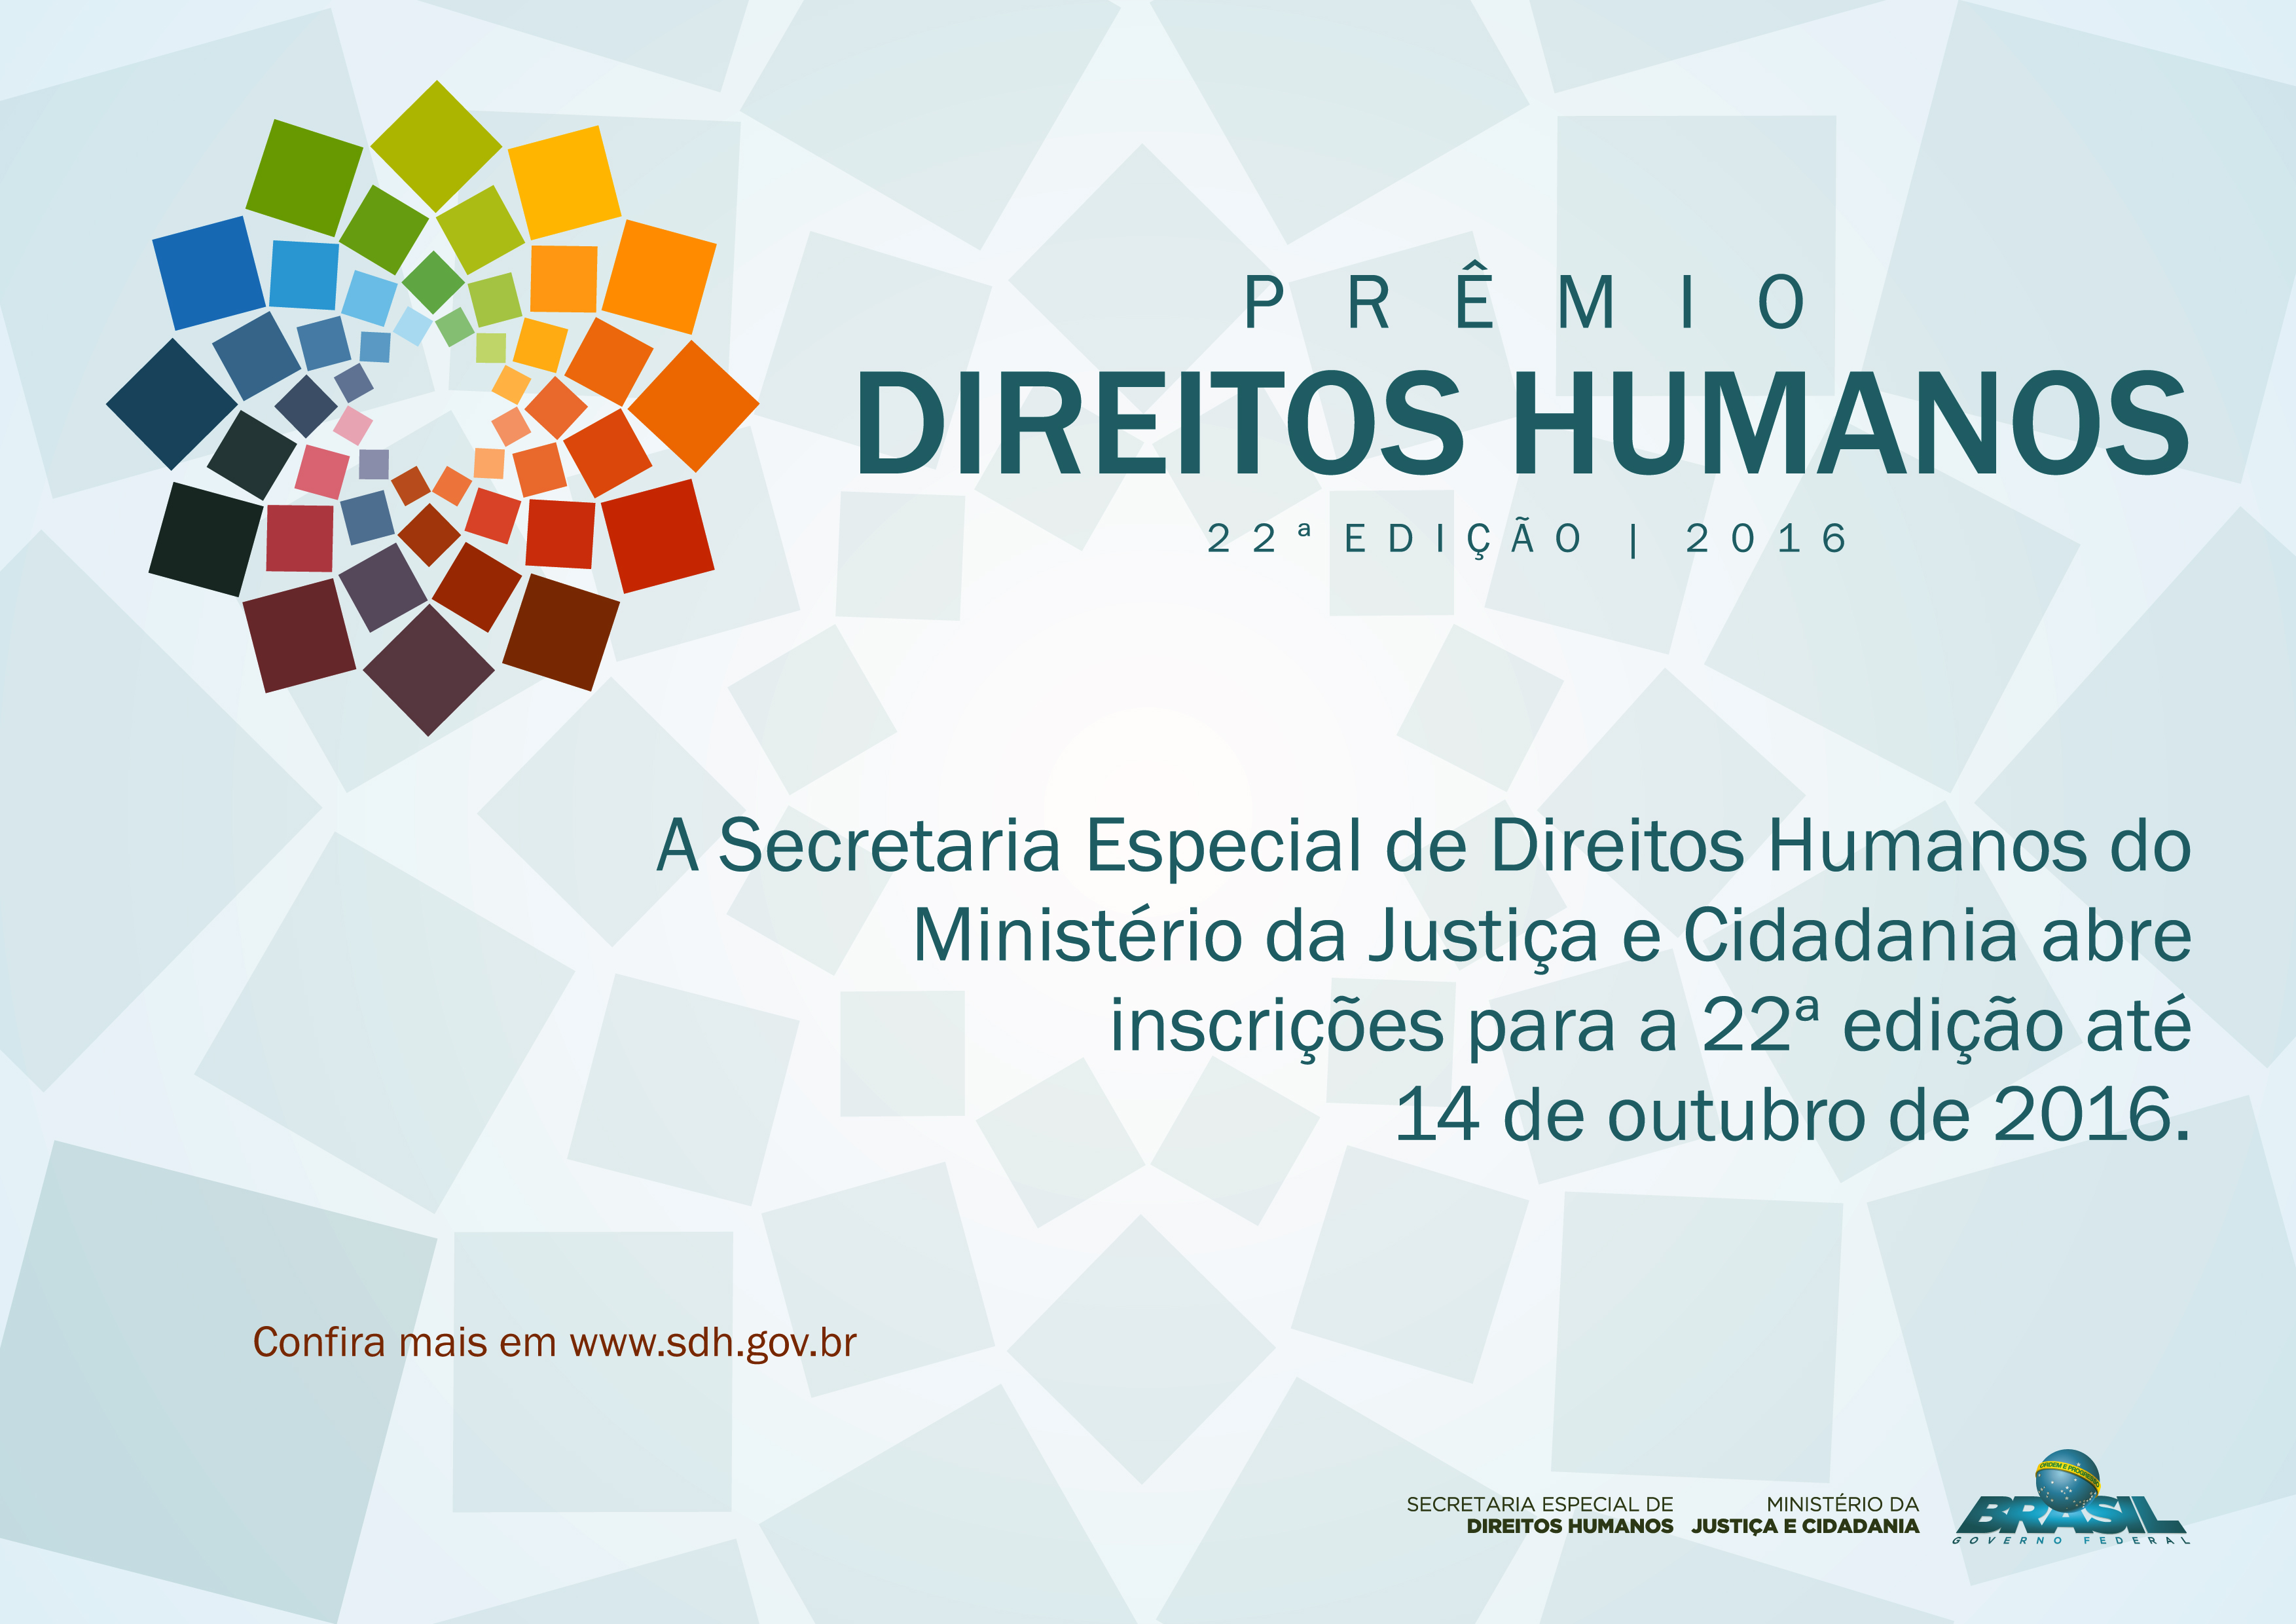 Fundo de Palco - Prêmio Direitos Humanos 2016.cdr